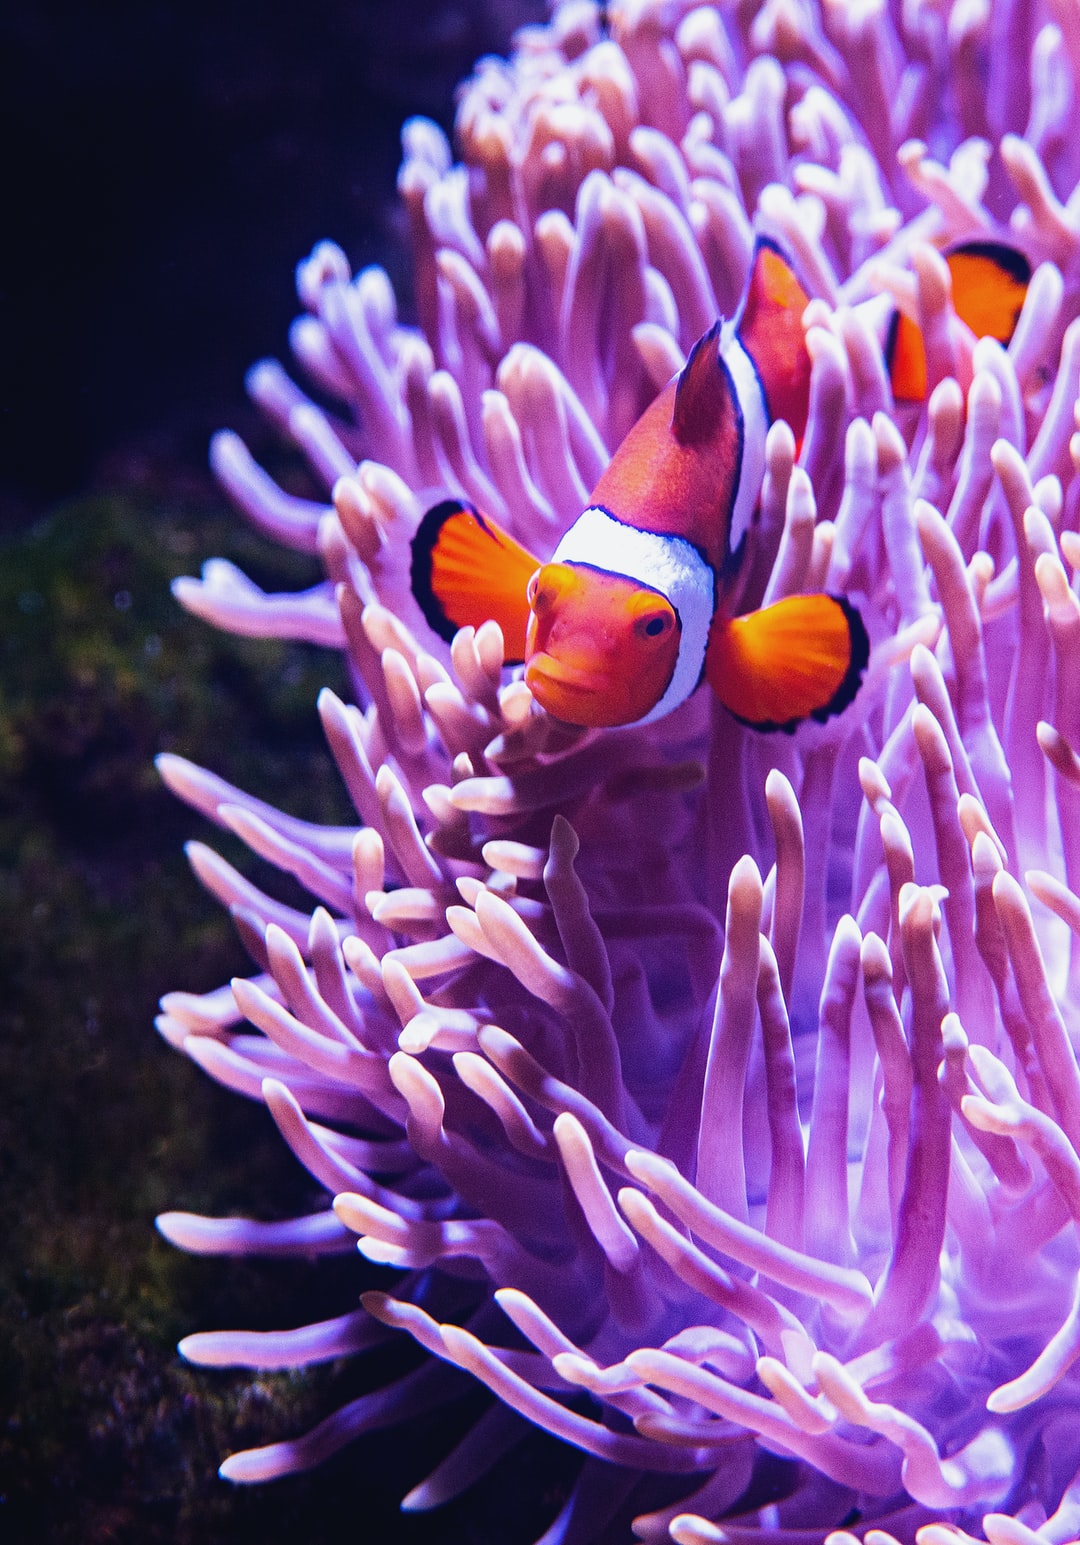 25 wichtige Fragen zu Kann Man Clownfische Im Aquarium Halten?